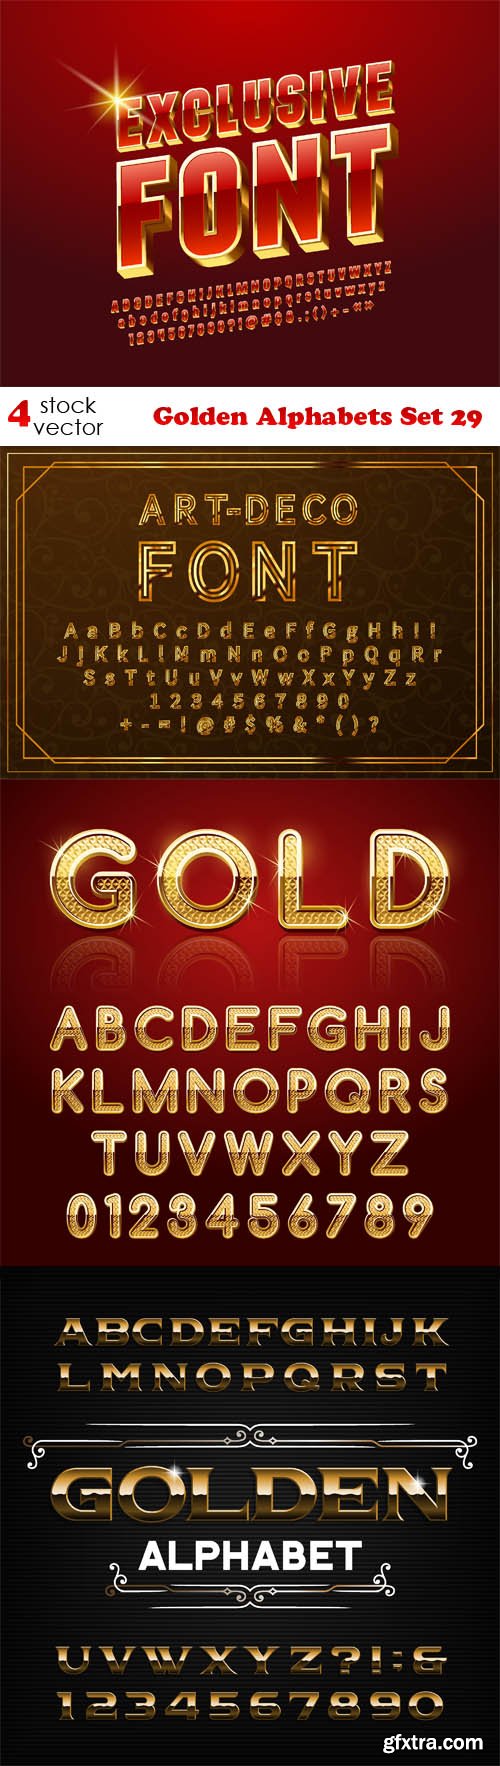 Vectors - Golden Alphabets Set 29